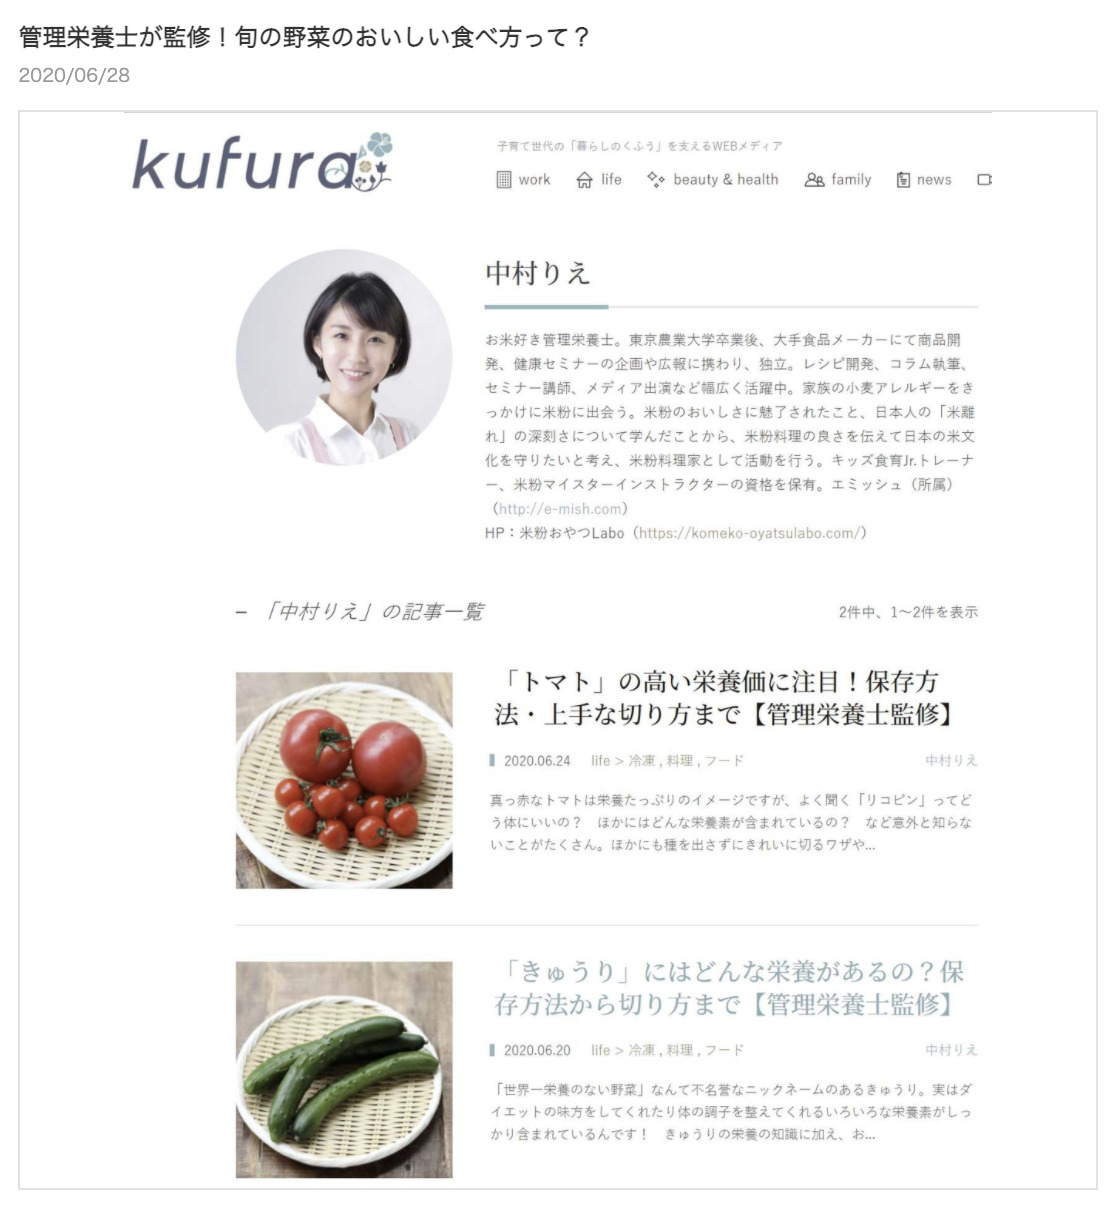 【kufura】管理栄養士監修記事 執筆のイメージ